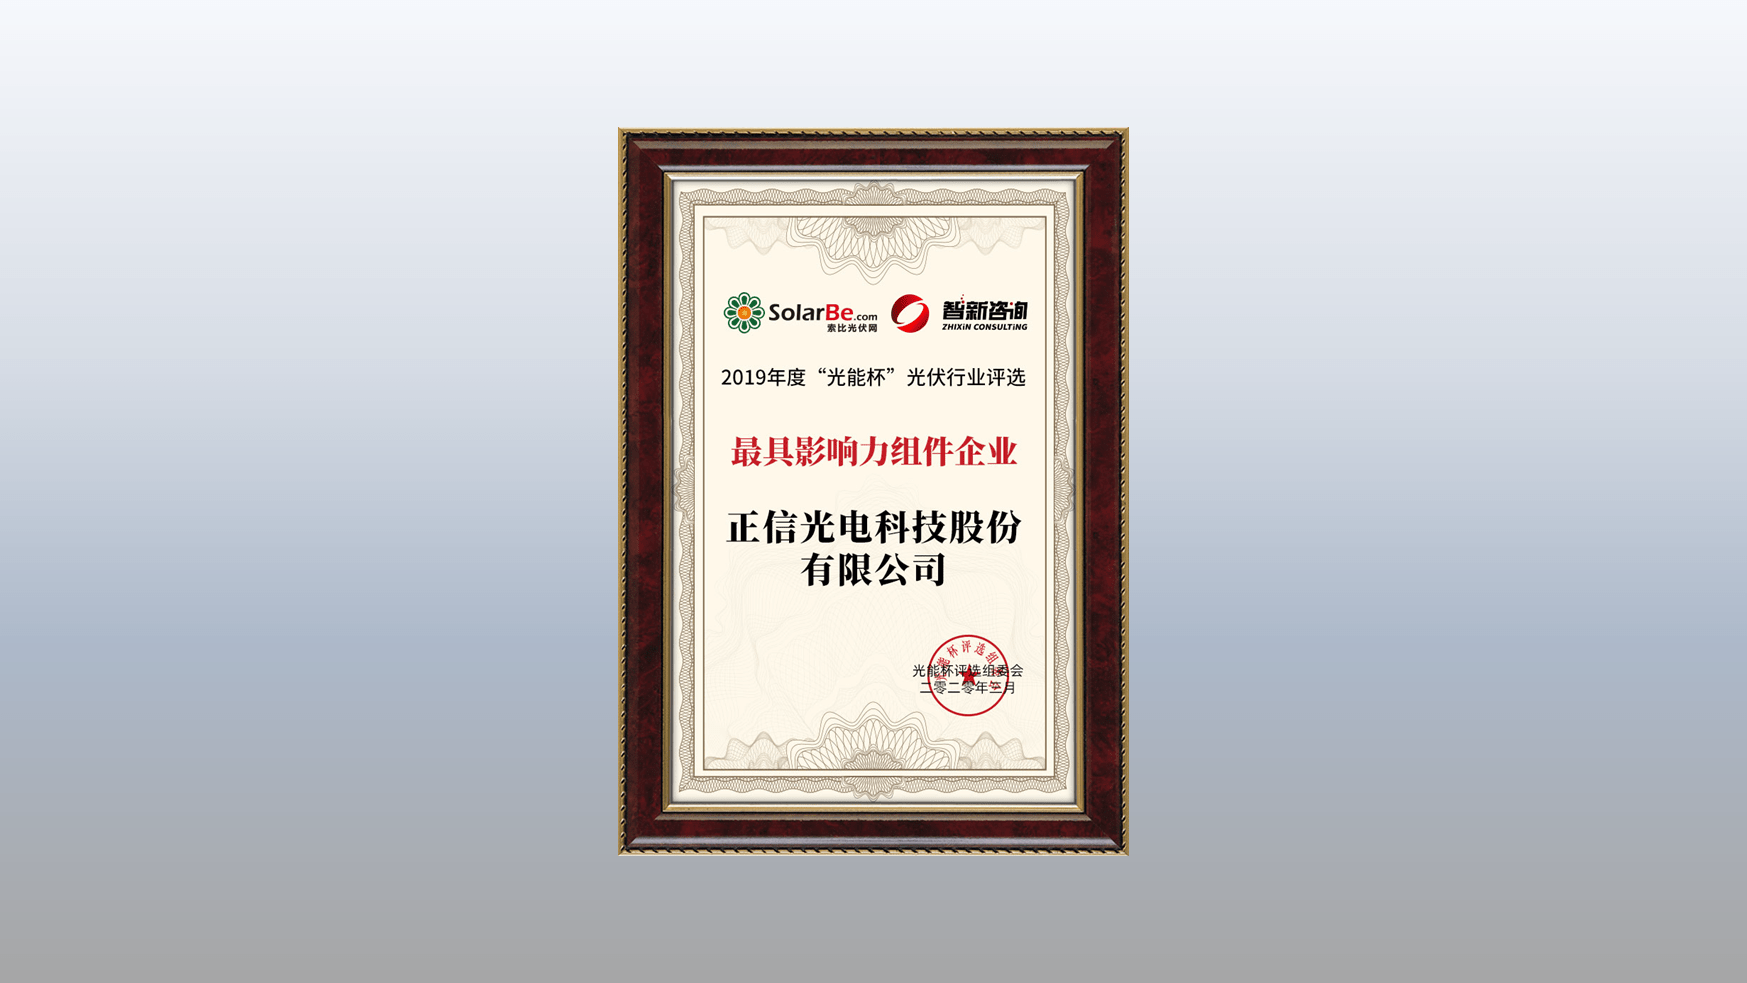 فازت شركة Zhengxin Solar بجائزة 'المؤسسة الأكثر نفوذاً'